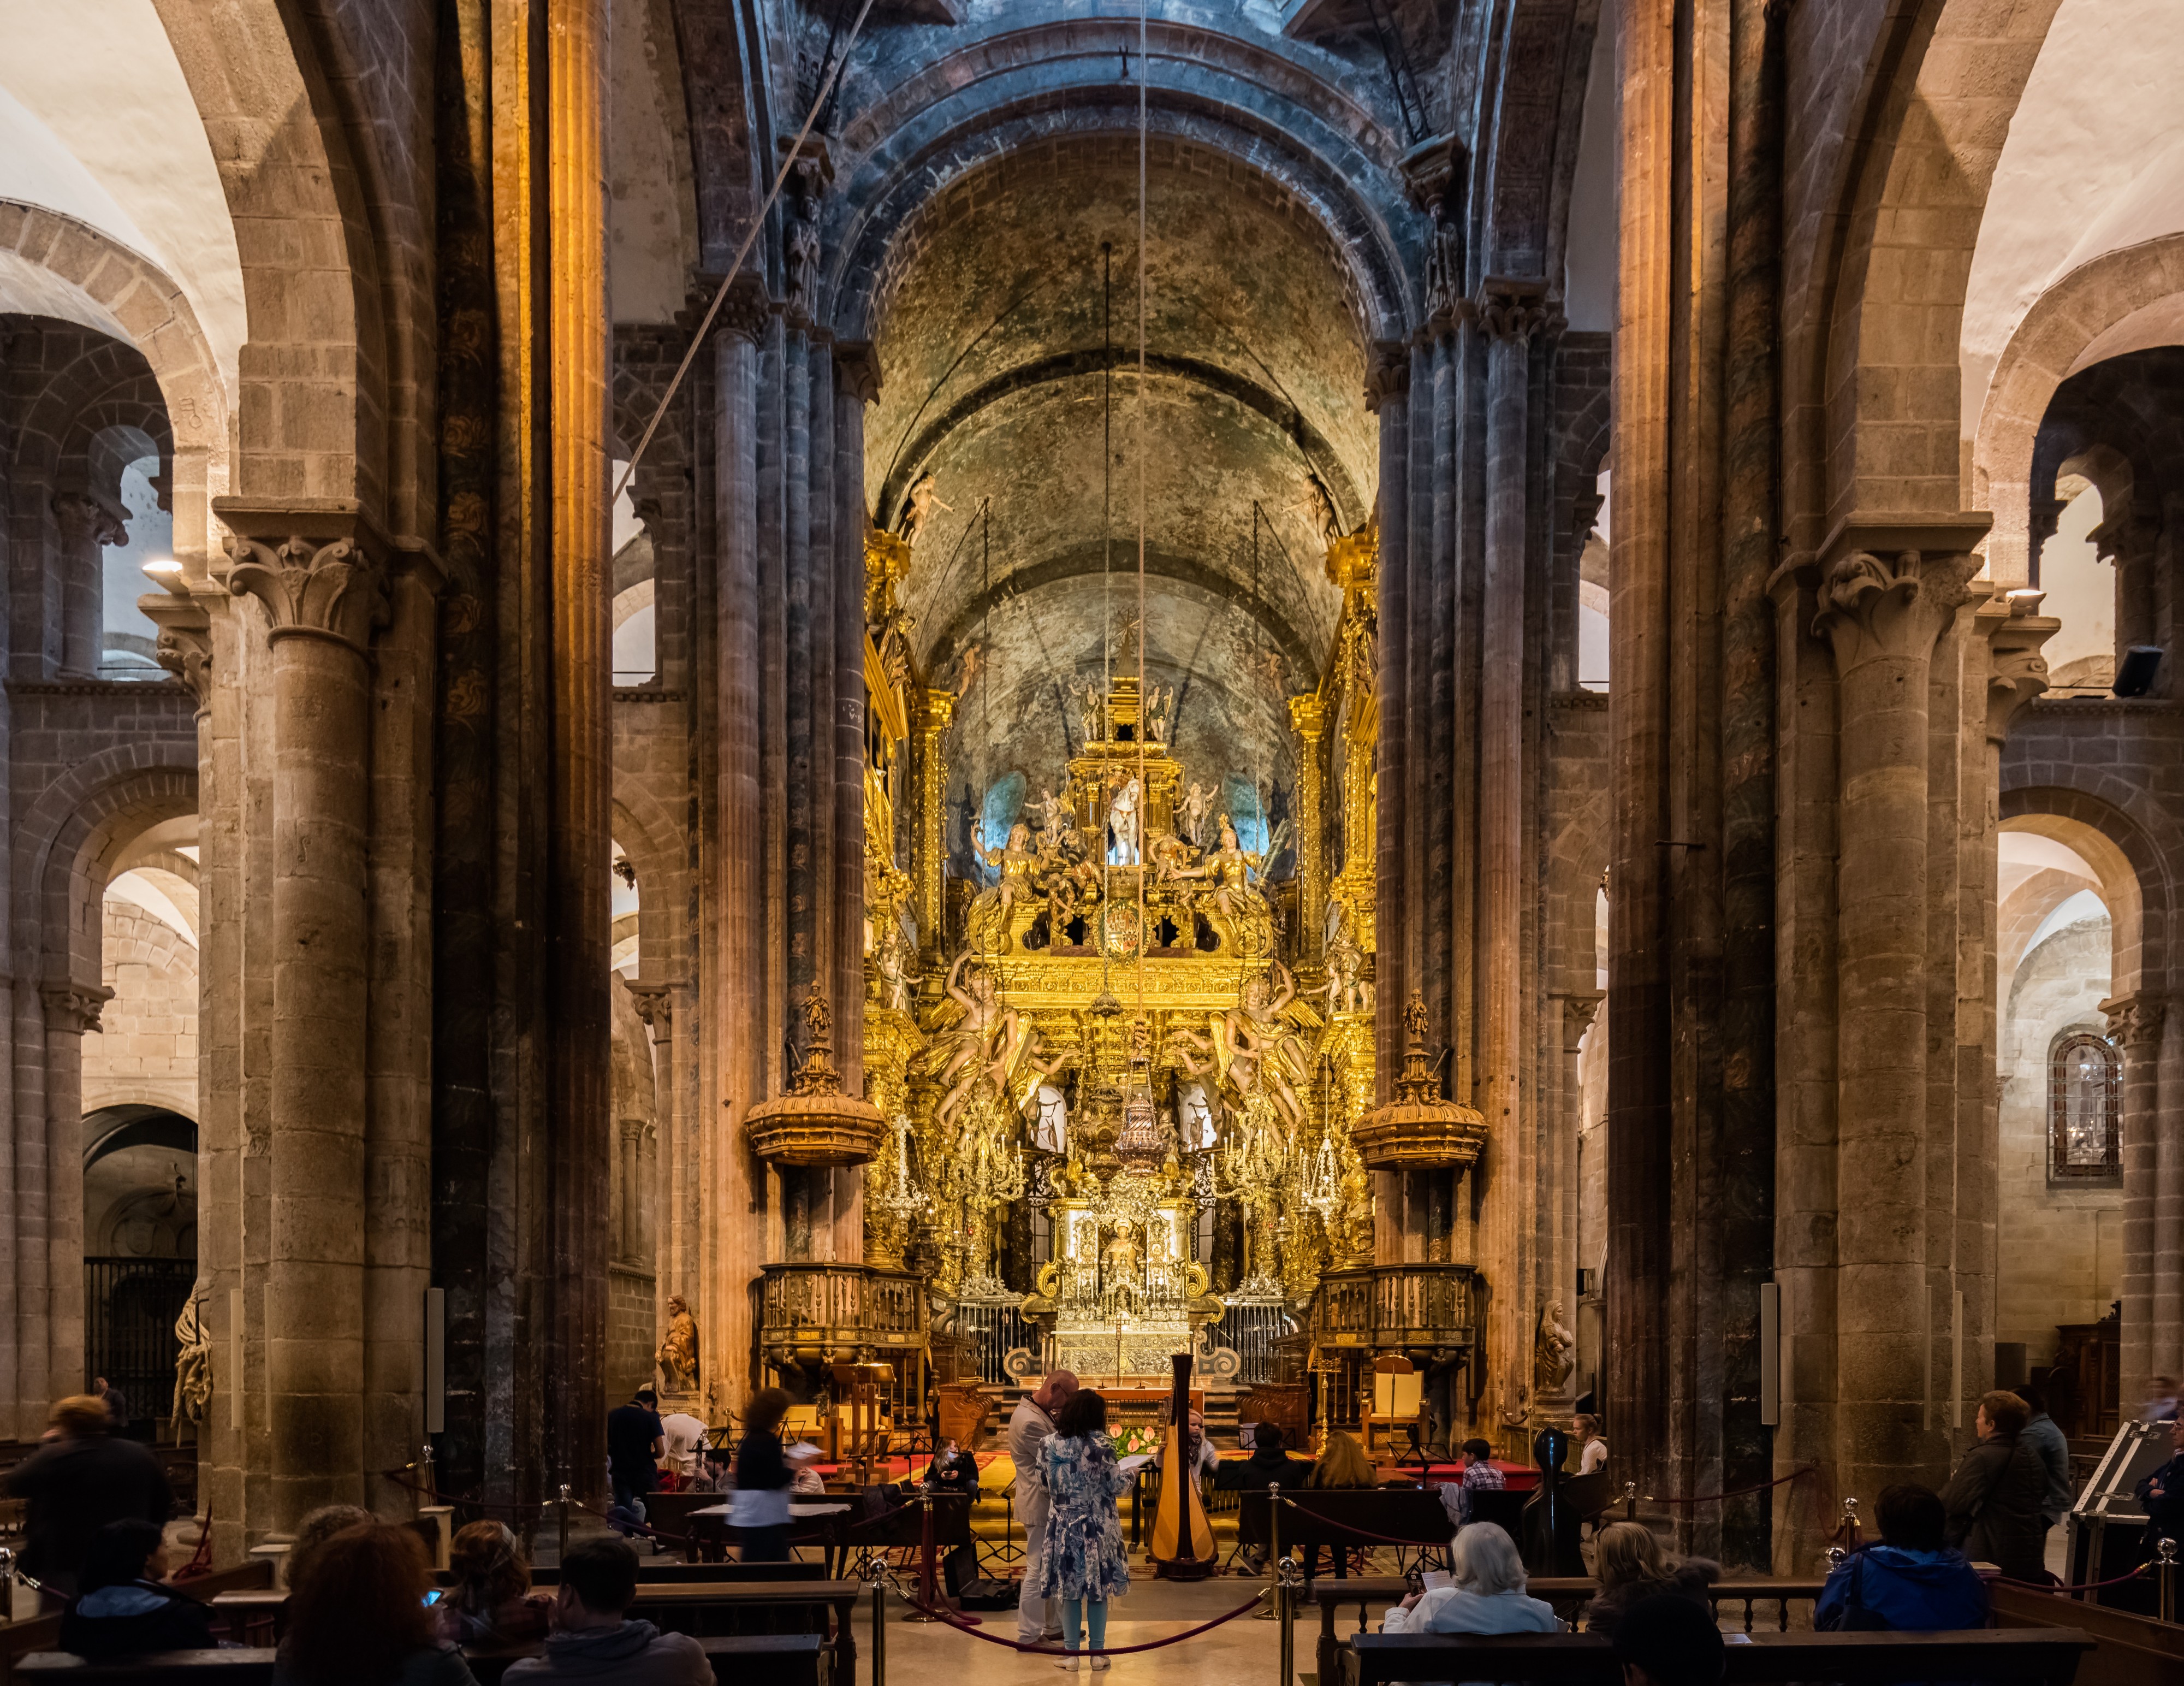 Catedral, Santiago de Compostela, España, 2015-09-22, DD 11